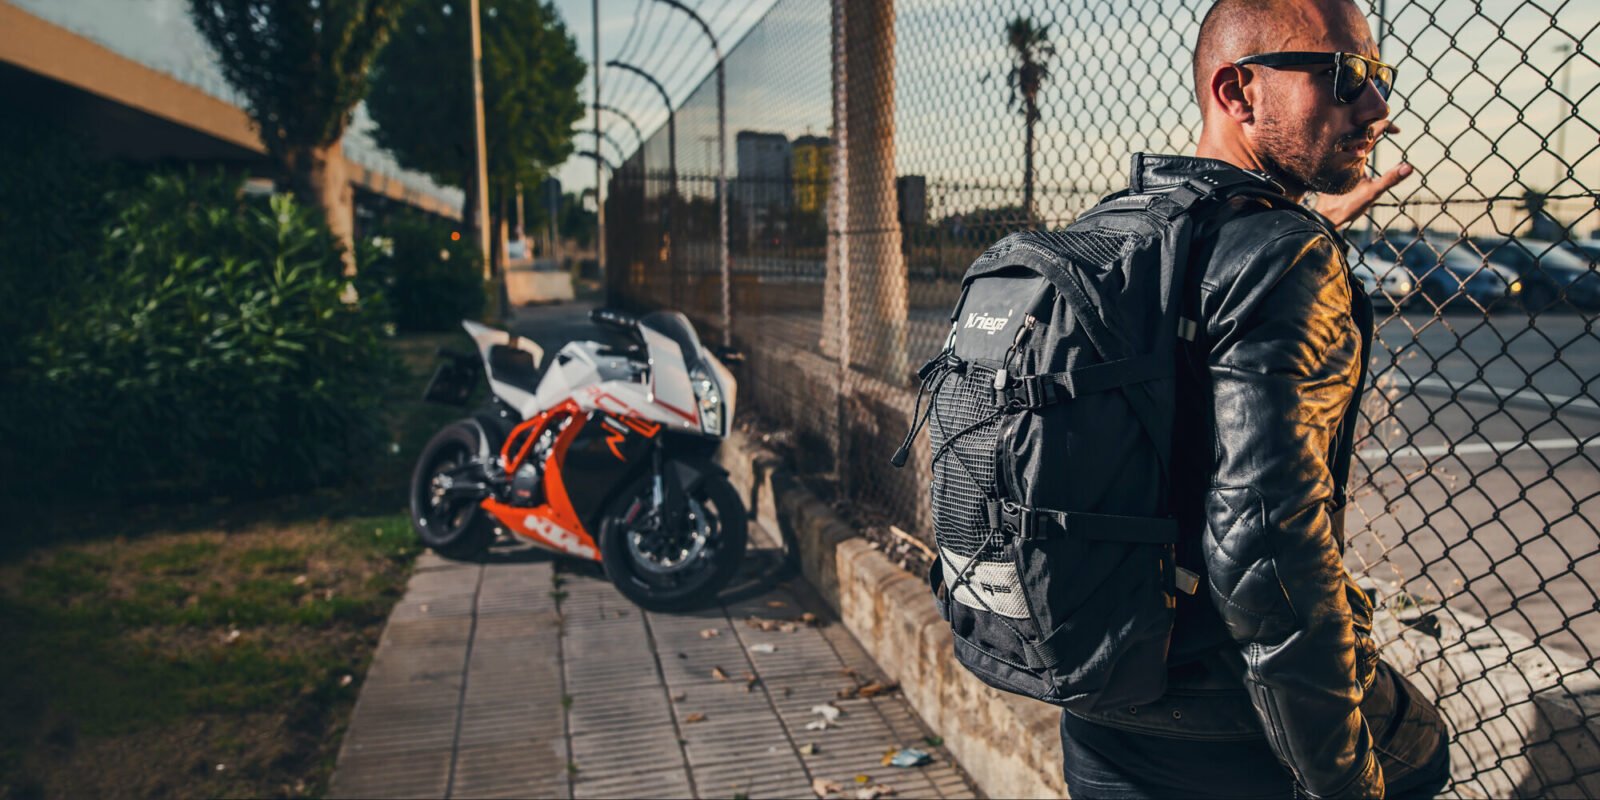 Kriega R35 backpack